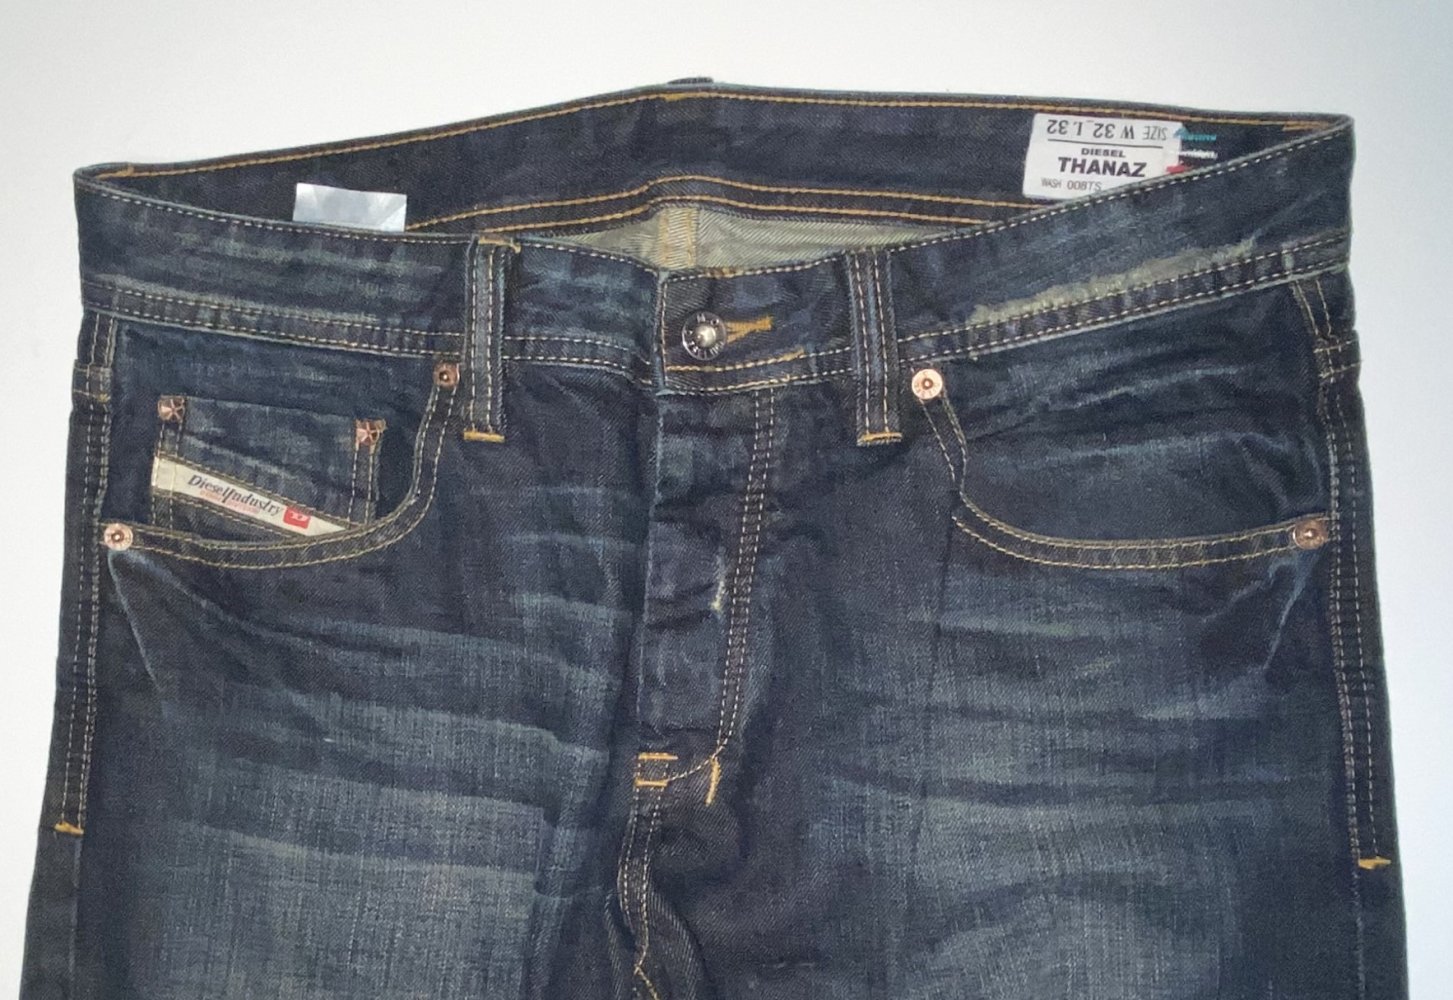 diesel - Diesel Herren Jeans in der Größe M (32/32) im sehr guten Zustand  :: Kleiderkorb.de